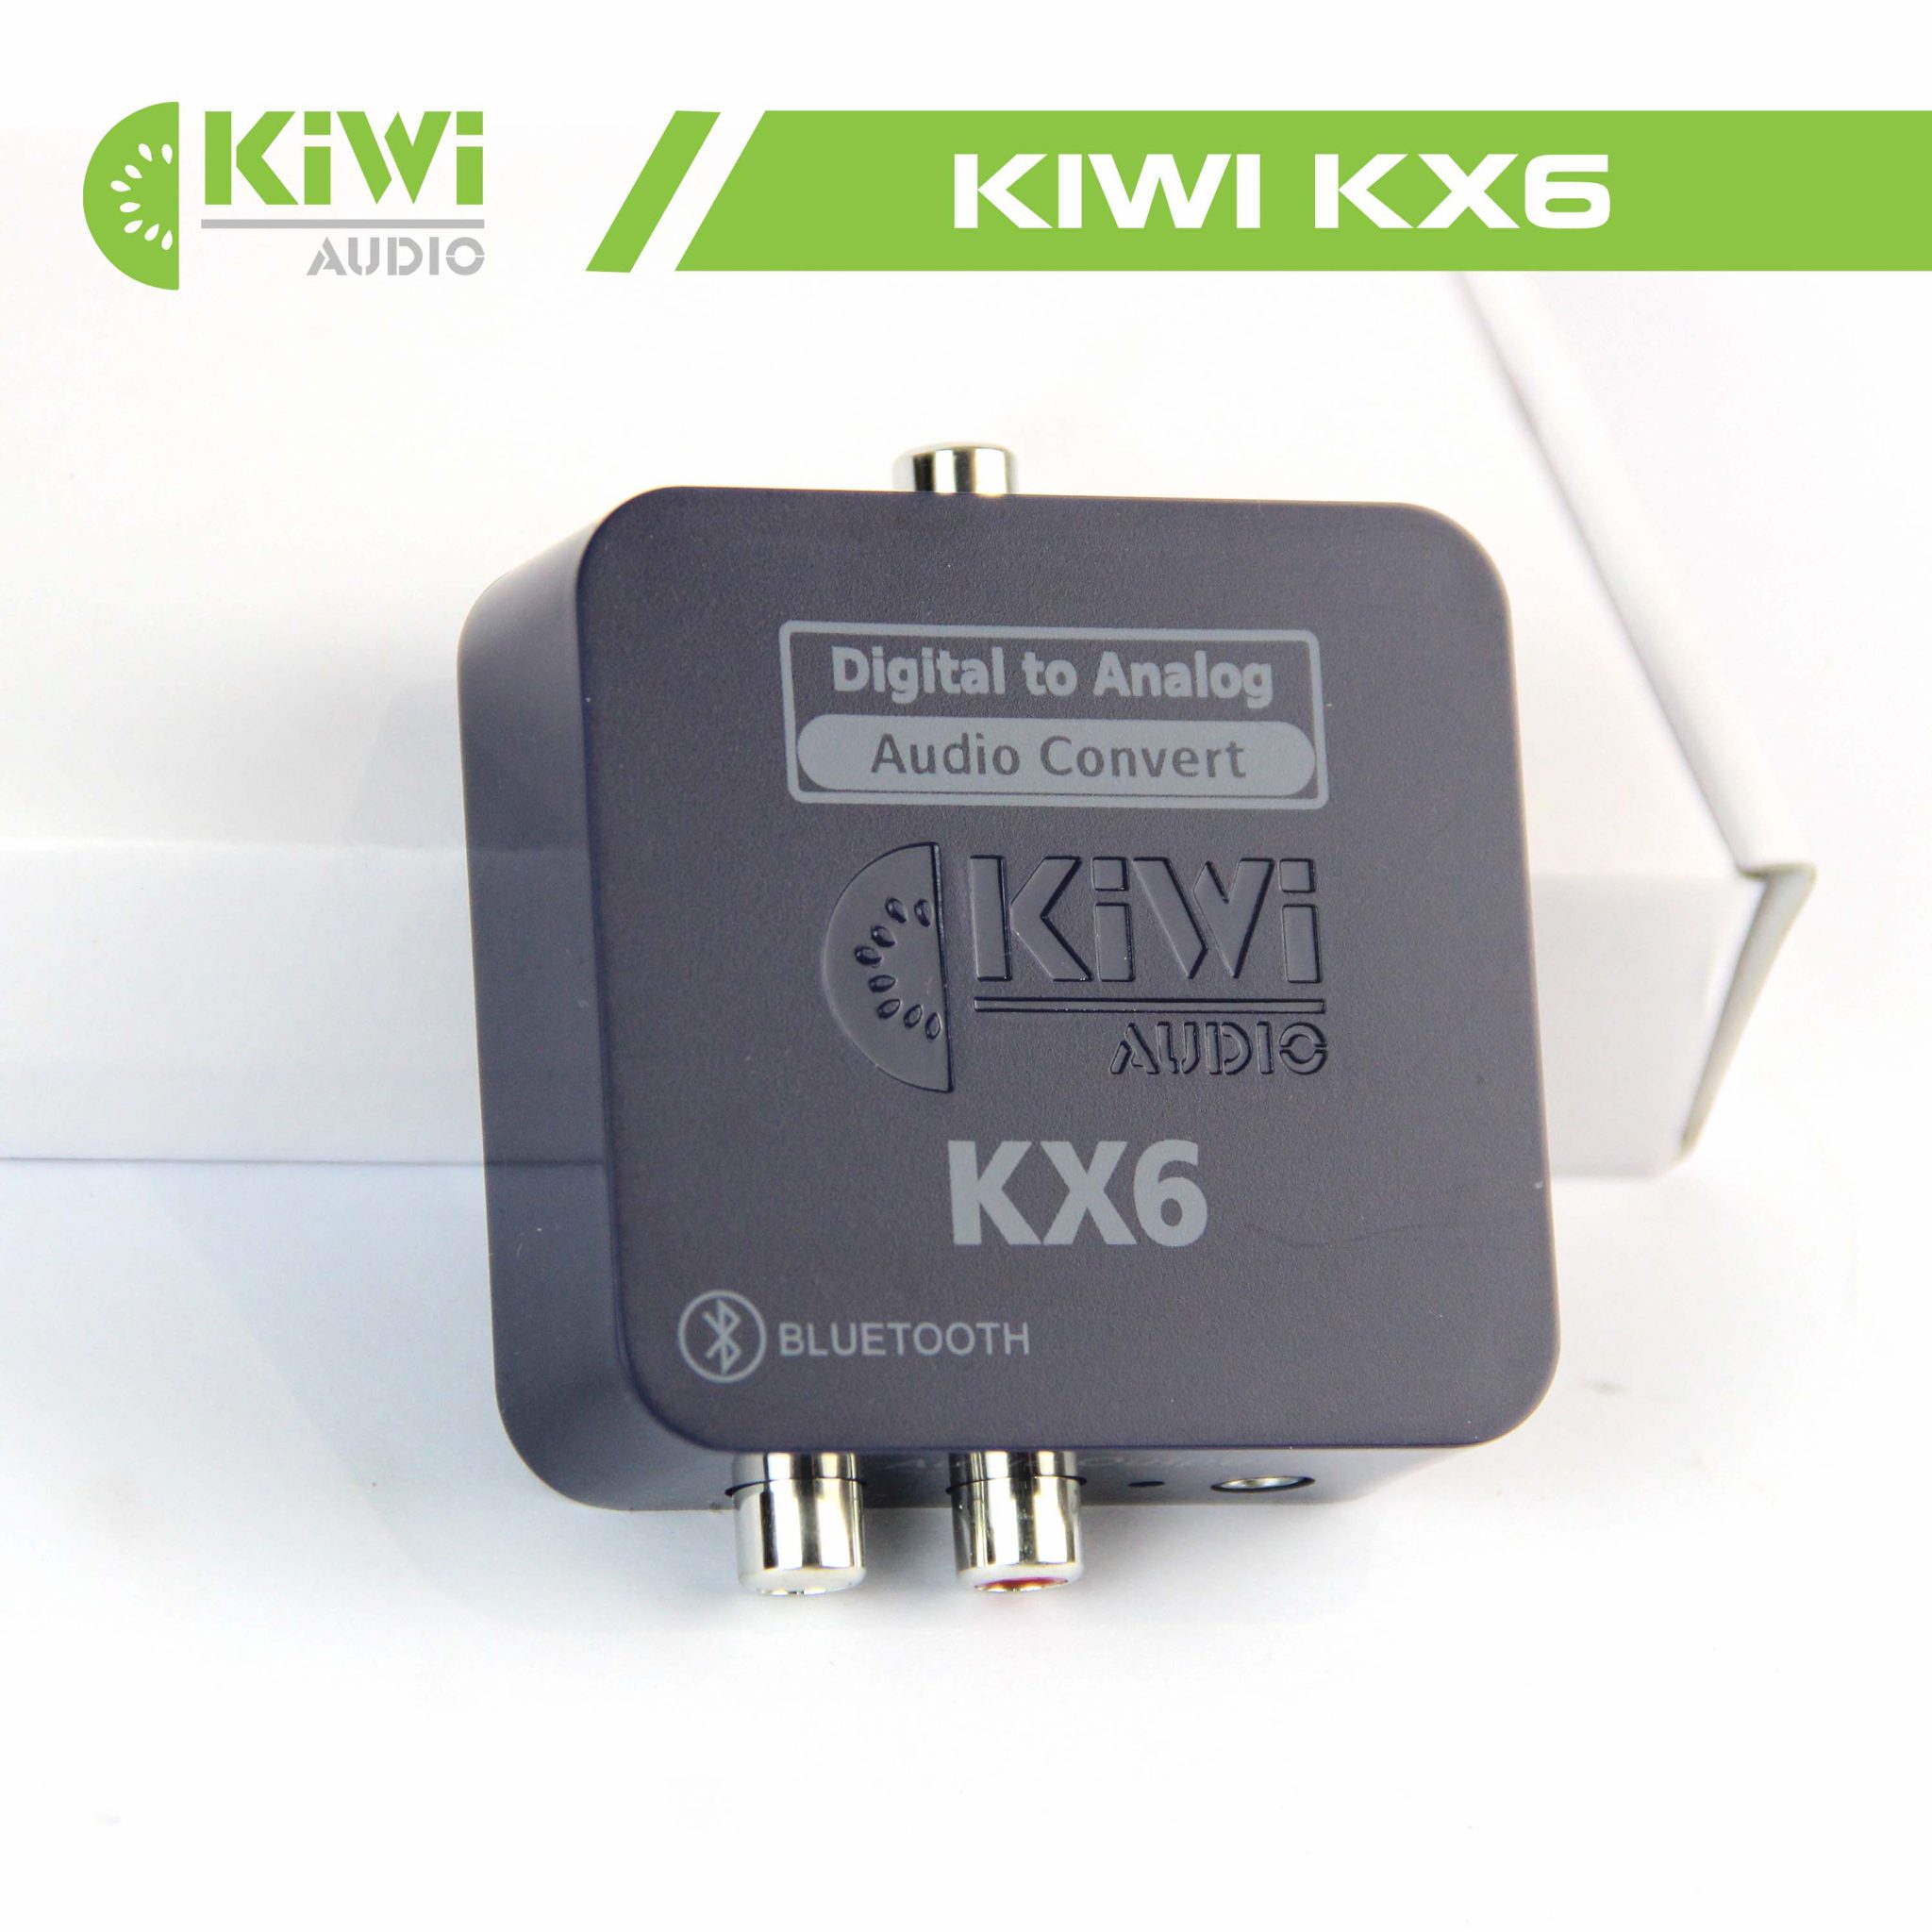 Bộ Chuyển Đổi Âm Thanh Quang Học Digital sang Analog Kiwi KX6 (Hỗ Trợ Bluetooth) - Hàng Chính Hãng